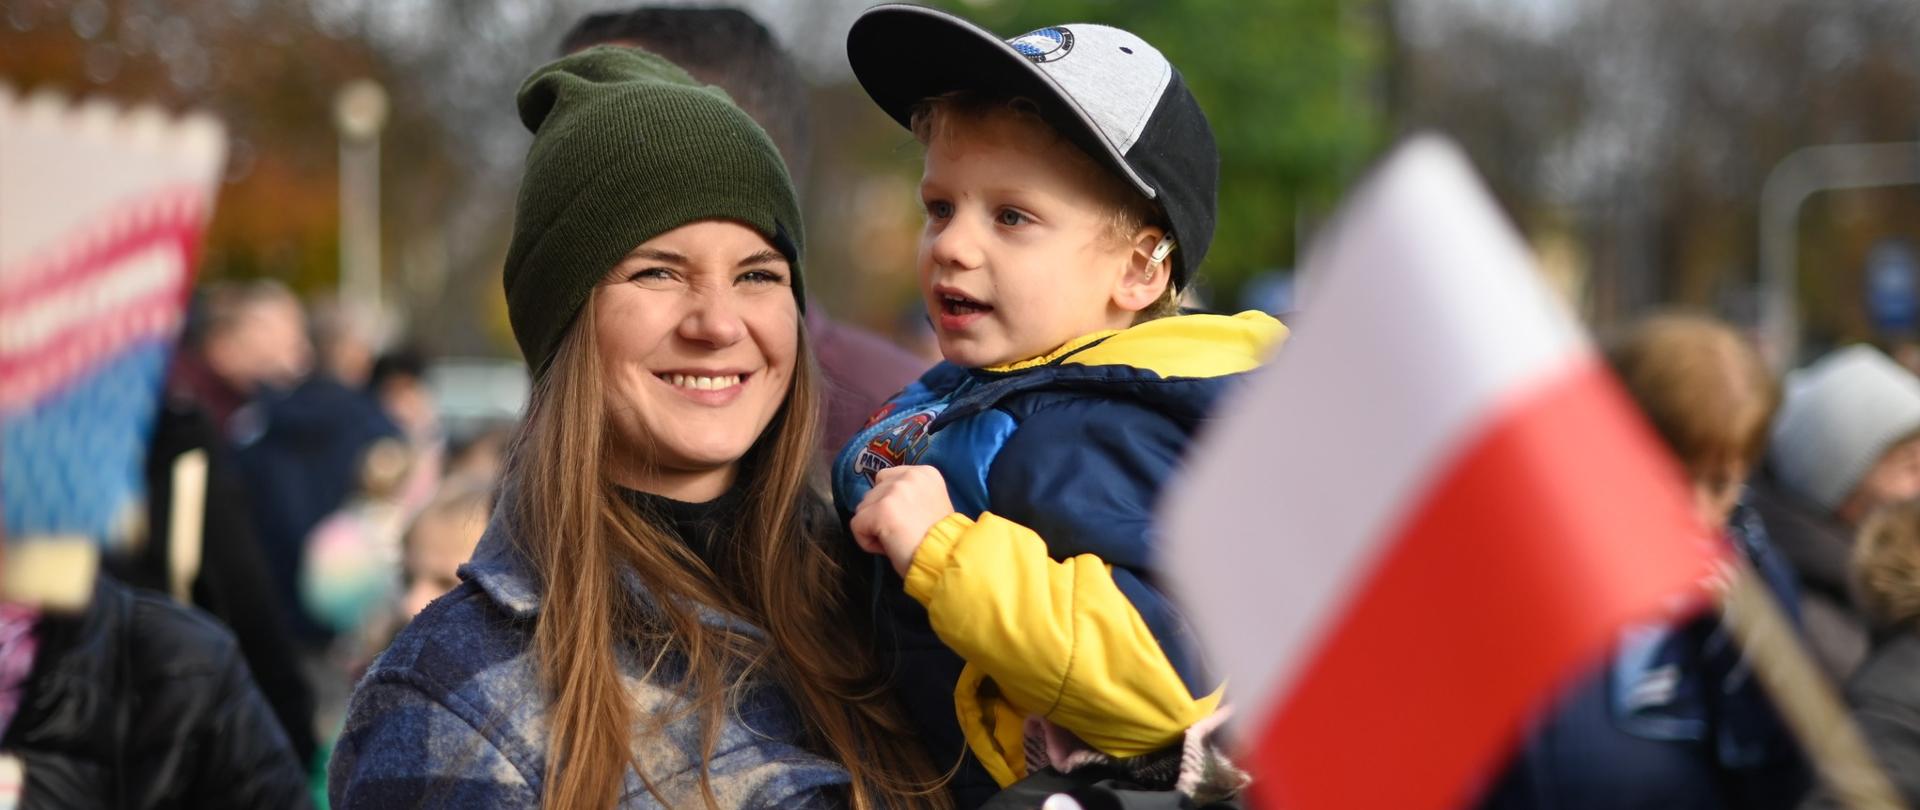 Na zdjęciu widzimy mieszkankę Konstantynowa, która trzyma swojego syna. Oboje mają szerokie uśmiechy na twarzach, są szczęśliwi i dumni. To piękny obraz miłości i więzi rodzinnej, który symbolizuje radość i dumę z przynależności do społeczności Konstantynowa.